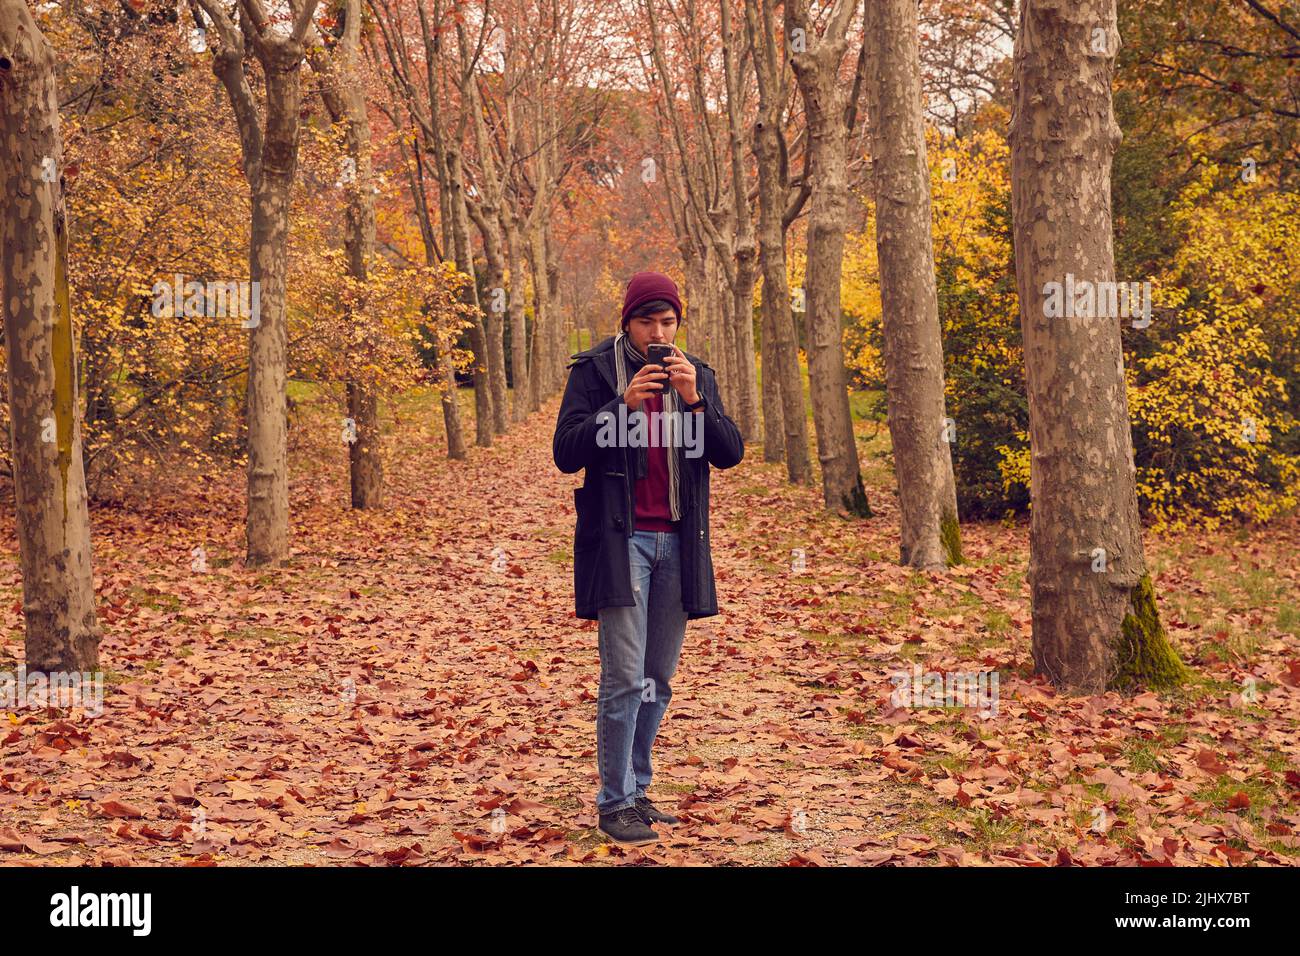 Junge weiße kaukasische Mann Blick auf Smartphone in einem Korridor von Bäumen über braun gefallenen Blättern im Wald in langen Mantel und Kappe gekleidet. Herbstfarben Stockfoto